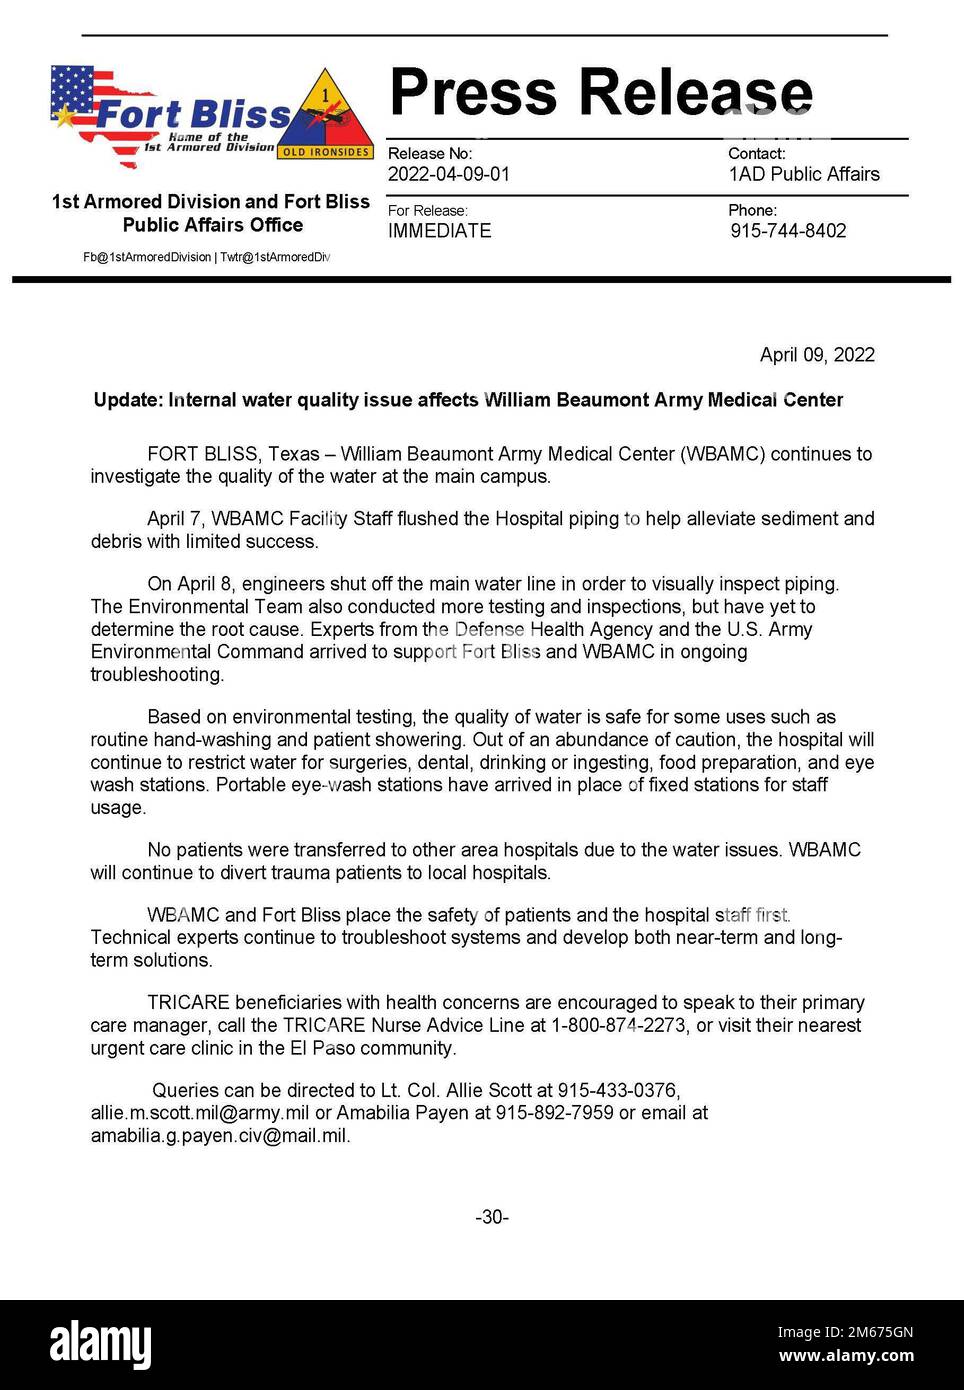 Aktualisierte Pressemitteilung zum Thema Wasserkontamination im William Beaumont Army Medical Center Stockfoto